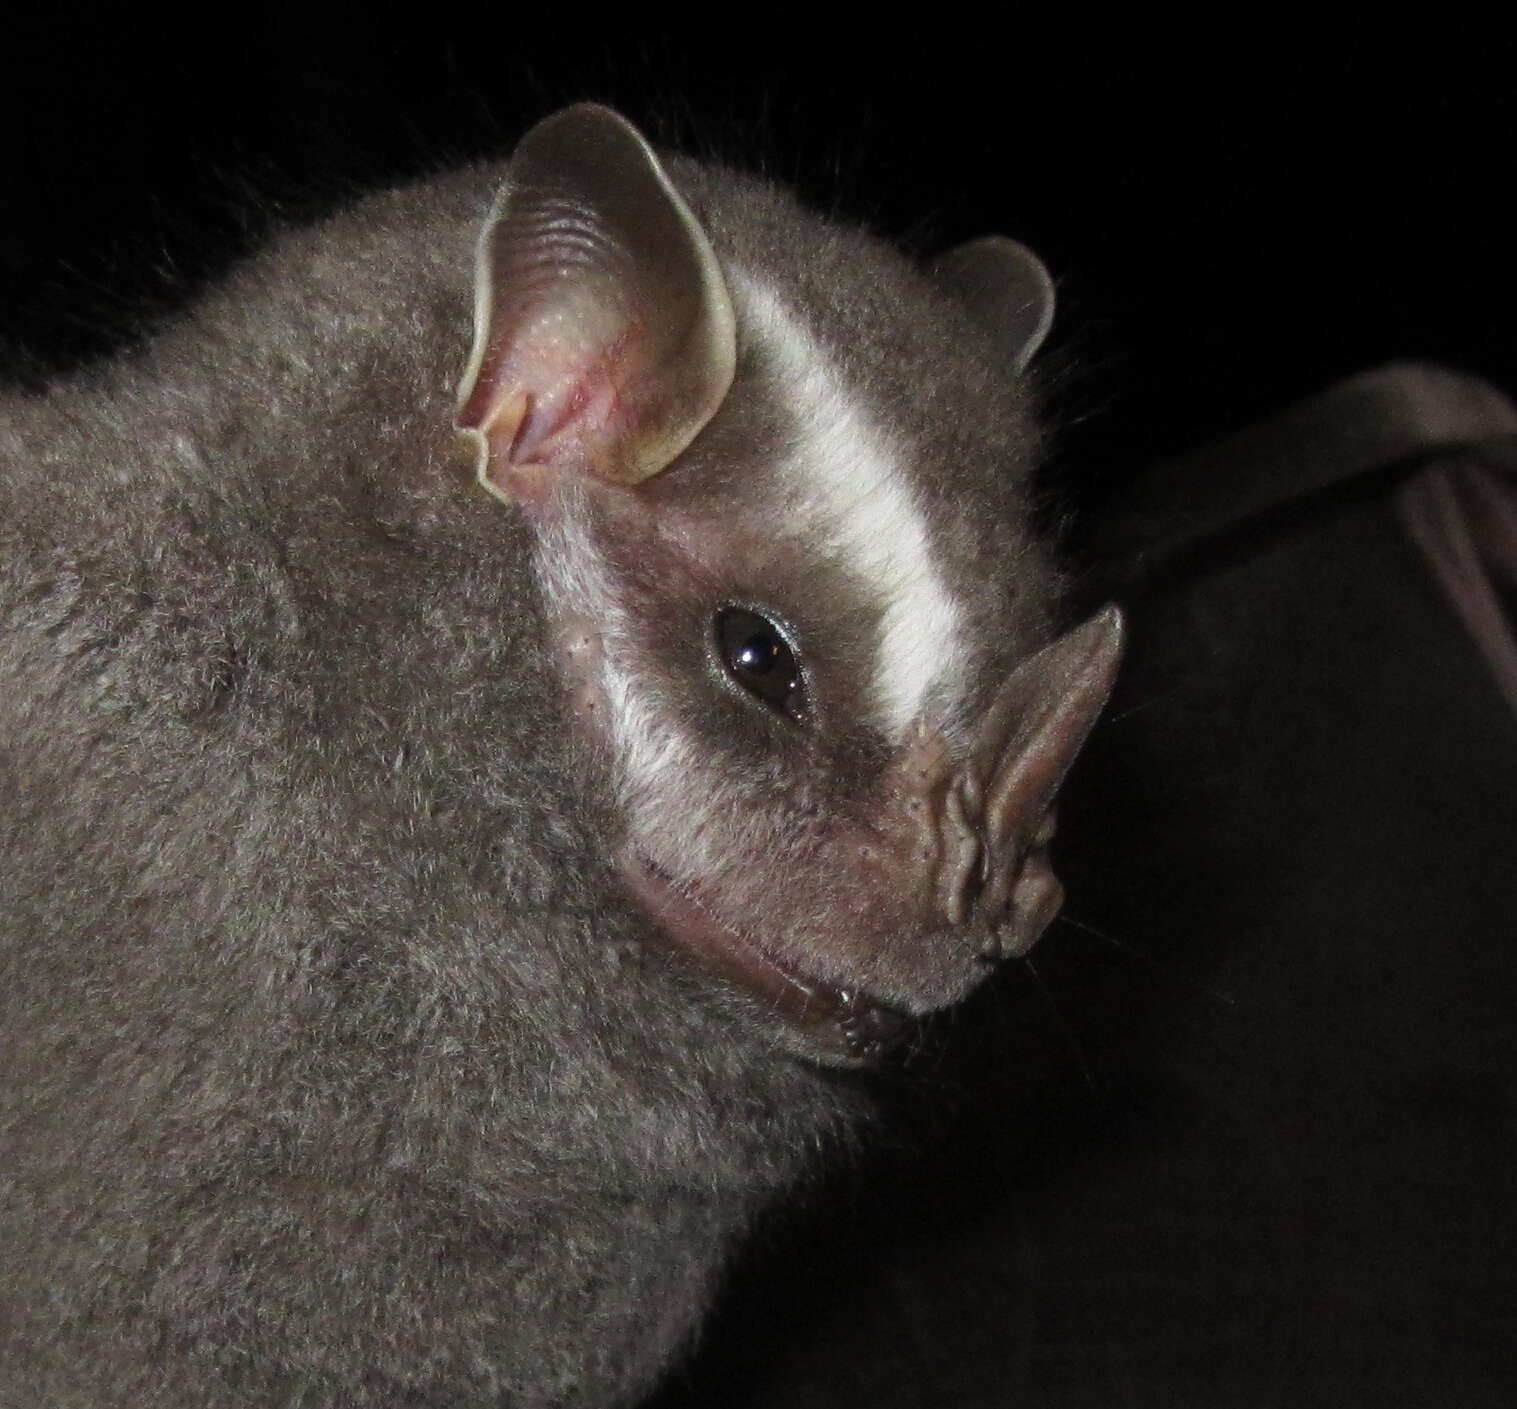 Image of Brazilian Big-eyed Bat